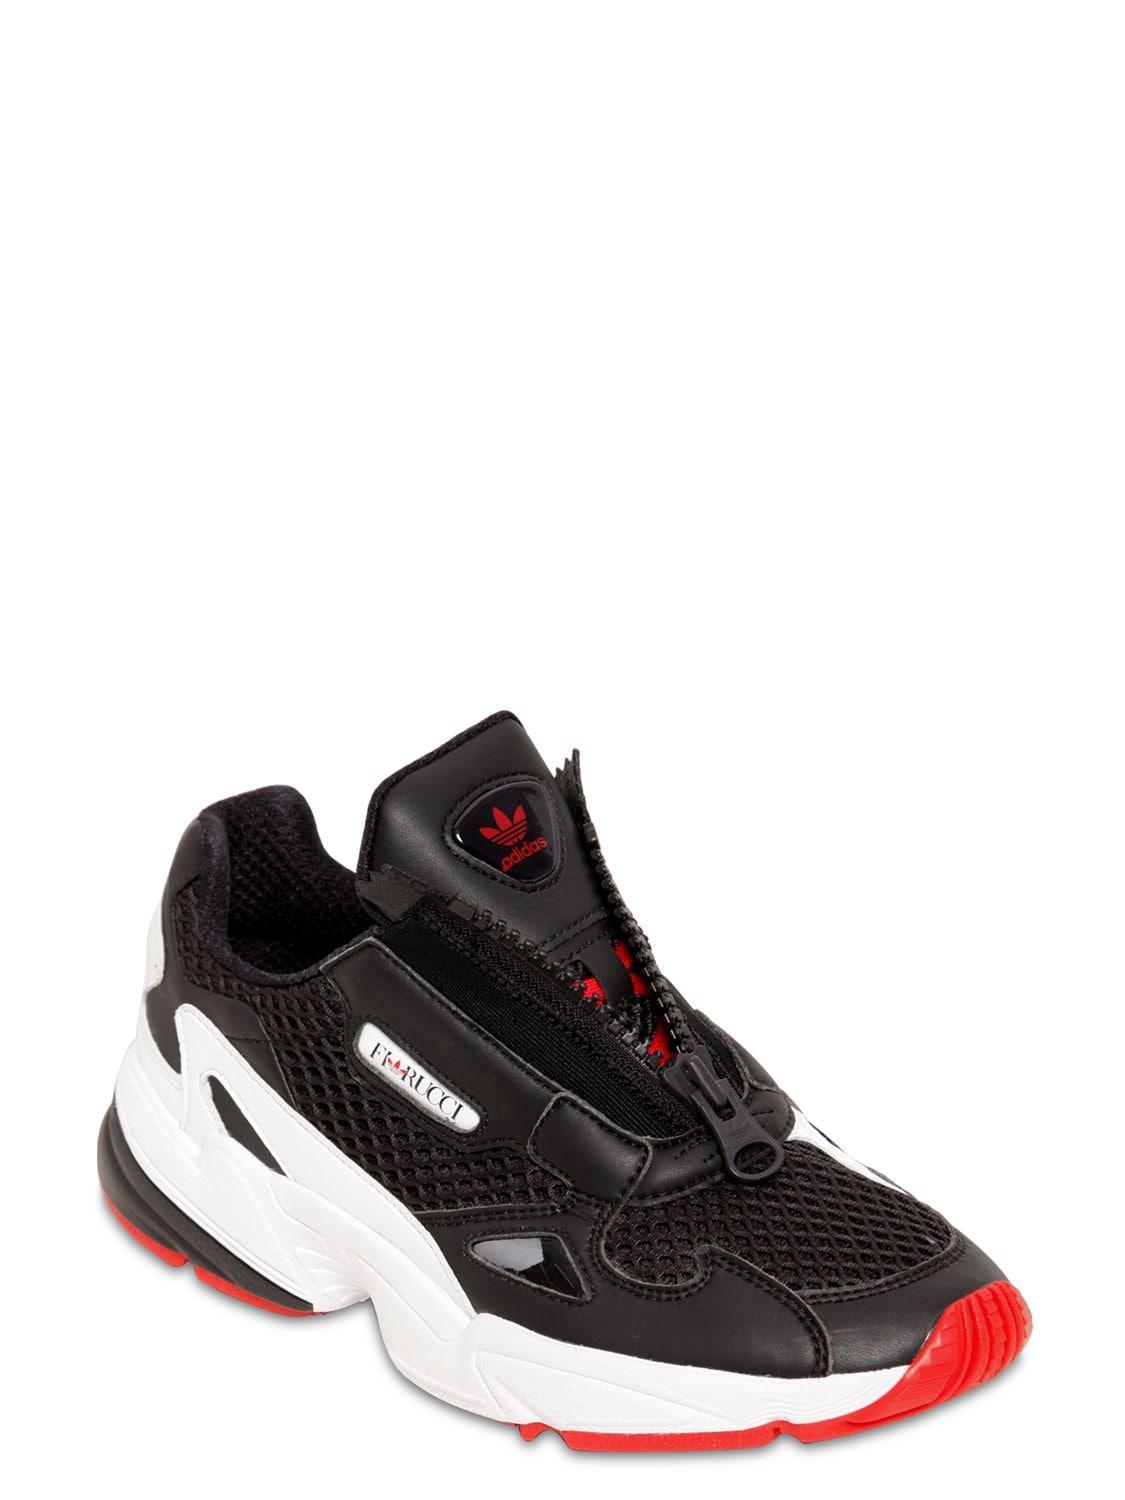 adidas Originals X Fiorucci Falcon Sneakers | Lyst